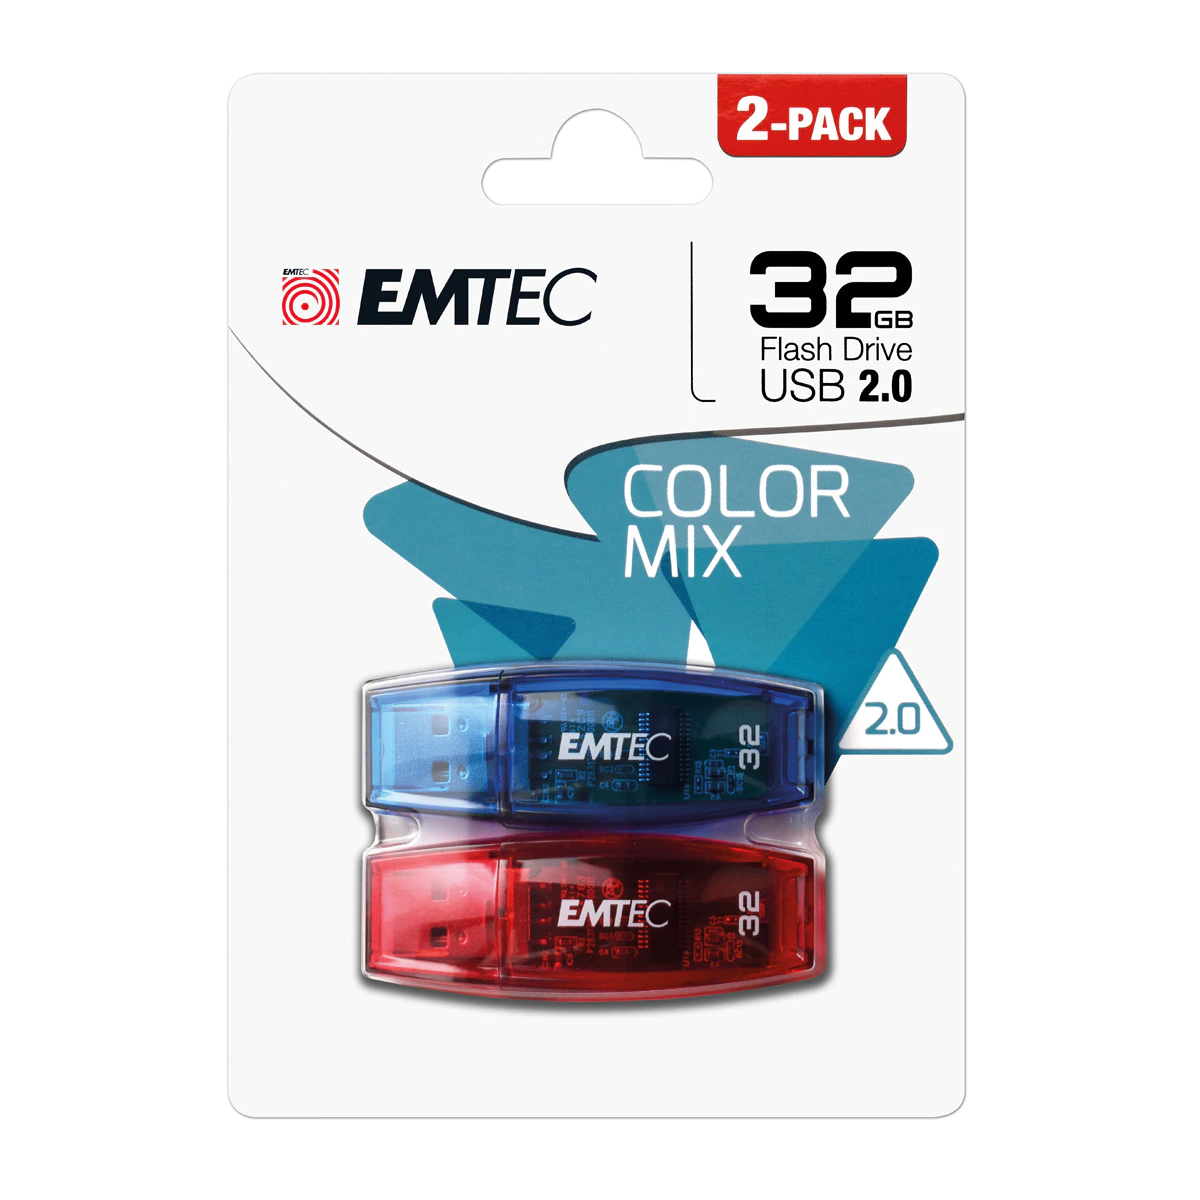 Pack 2 Pendrives Emtec C410 ColorMix USB 2.0 32 GB